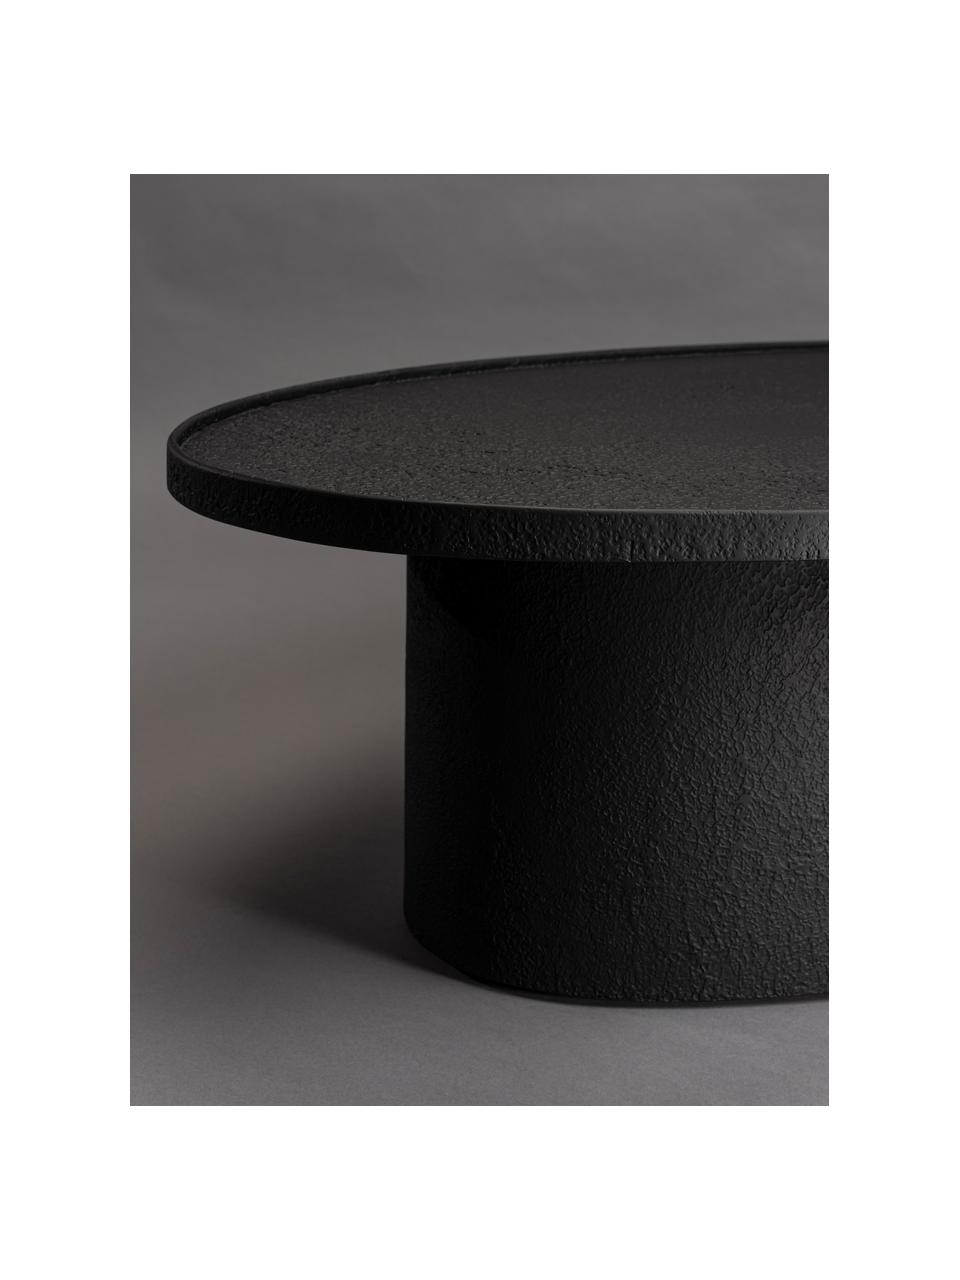 Ovaler Couchtisch Winston in Schwarz, Schwarz, 120 x 32 cm